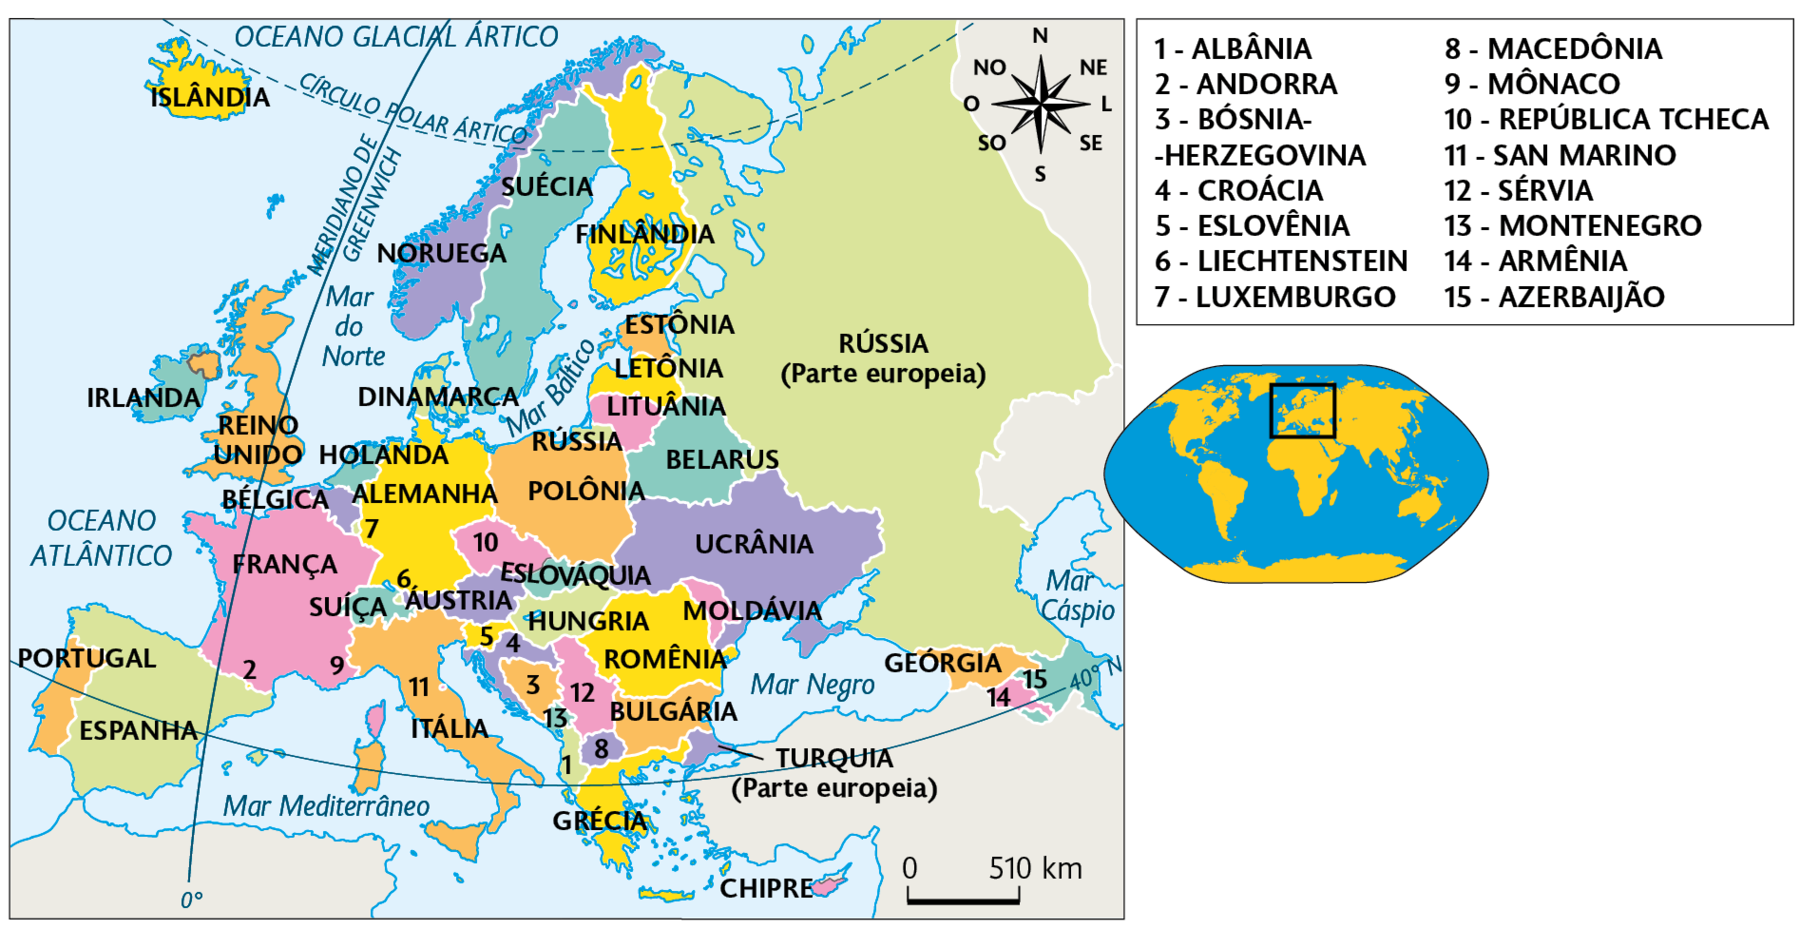 Mapa. Europa (2018). Islândia, Irlanda, Reino Unido, Portugal, Espanha, França, Andorra, Mônaco, Suíça, San Marino, Itália, Liechtenstein, Áustria, Luxemburgo, Alemanha, Bélgica, Holanda, República Tcheca, Eslováquia, Hungria, Croácia, Eslovênia, Bósnia-Herzegovina, Montenegro, Sérvia, Romênia, Macedônia, Albânia, Bulgária, Turquia (parte europeia), Moldávia, Ucrânia, Polônia, Rússia (parte europeia), Belarus, Lituânia, Letônia, Estônia, Geórgia, Armênia e Azerbaijão. À direita, mapa de localização, planisfério destacando a região descrita. No canto superior direito, a rosa dos ventos e na parte inferior, a escala:  510 quilômetros por centímetro.